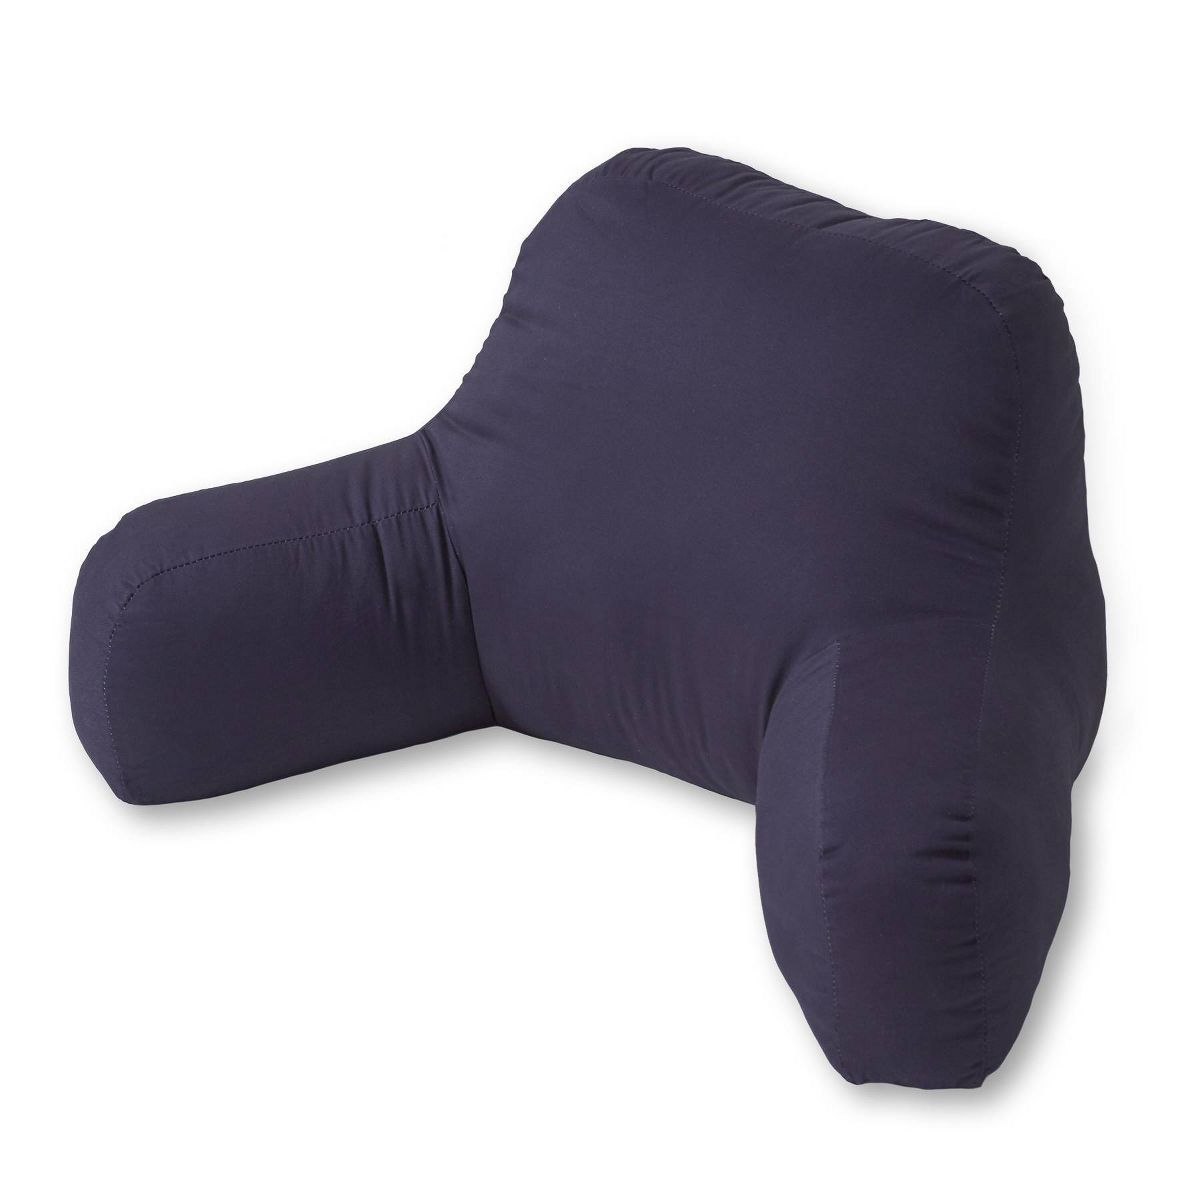 Kensington Garden Cotton Duck Bed Rest Pillow | Target